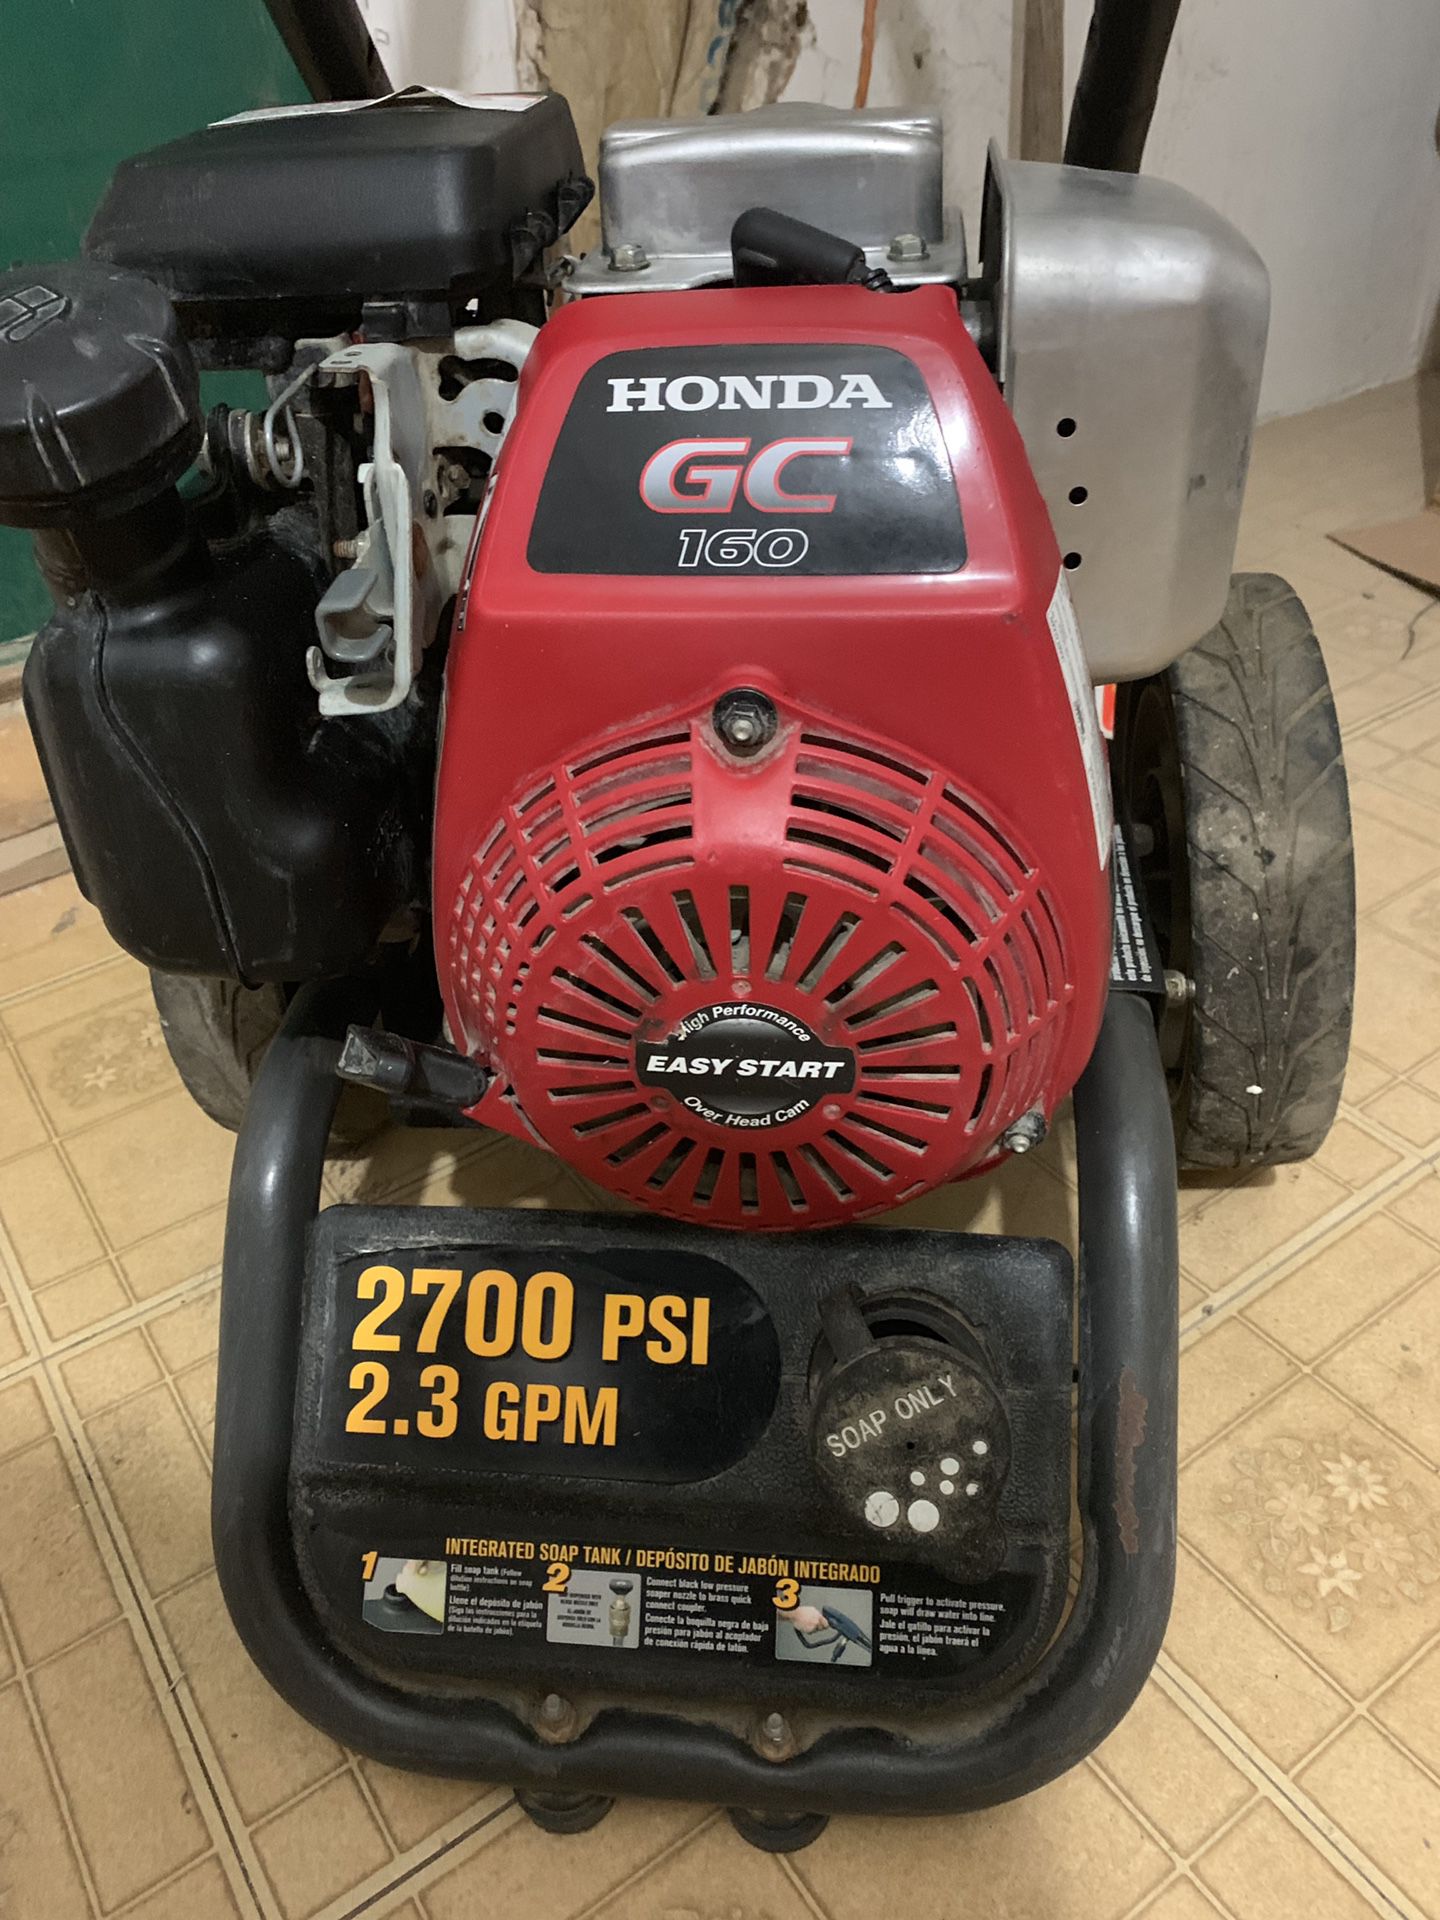 Honda GC160 pressure washer